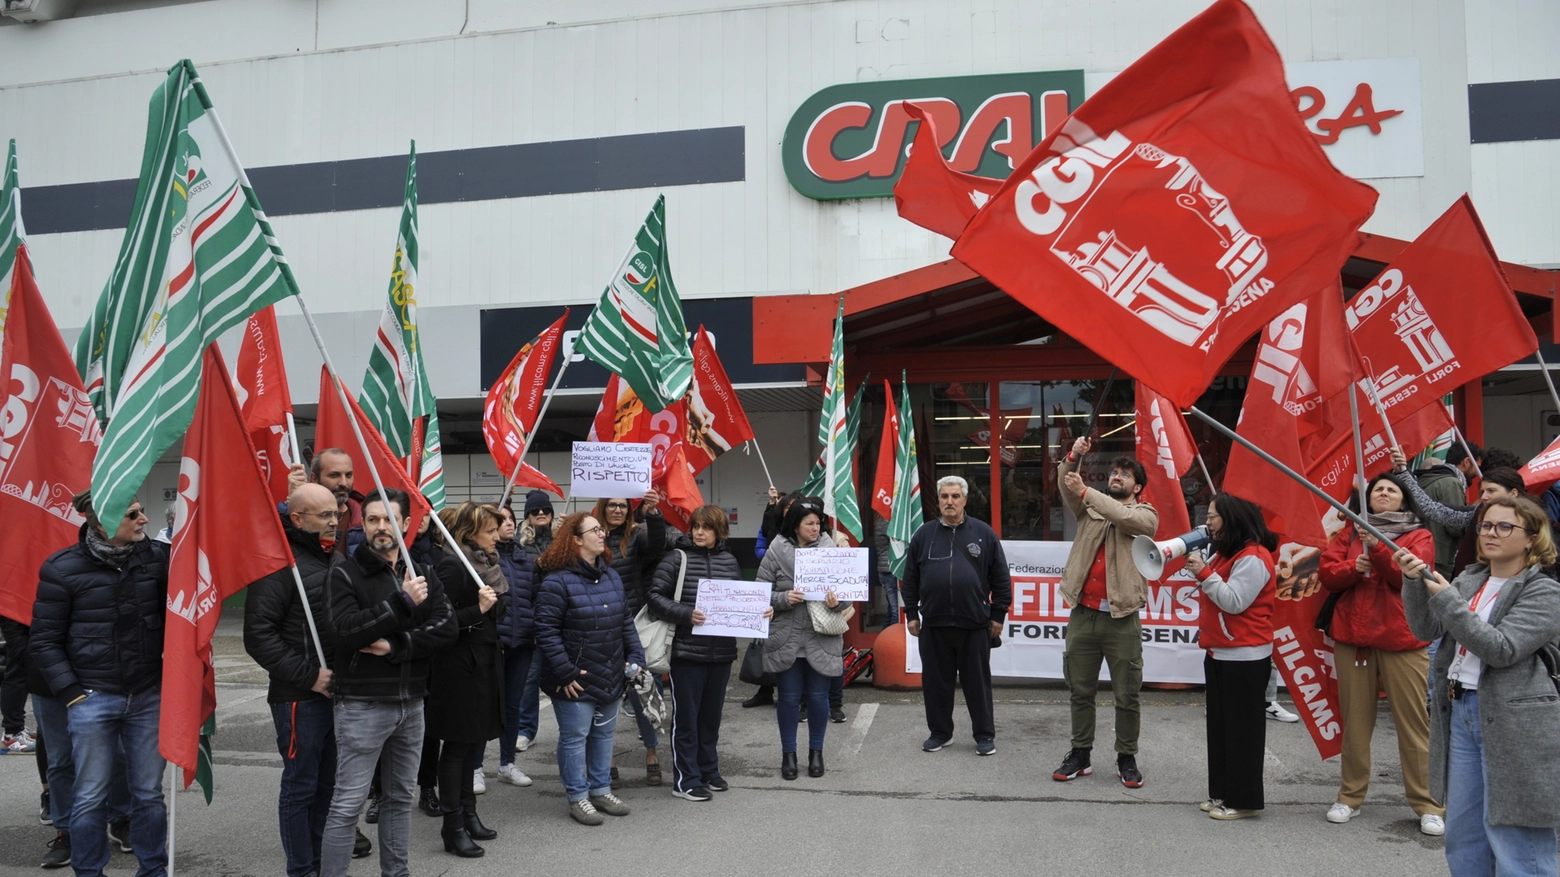 Forlì, su 23 lavoratori la metà rischia di rimanere a casa. I sindacati: “Manca un chiaro piano industriale della società subentrante Mood Maison”!